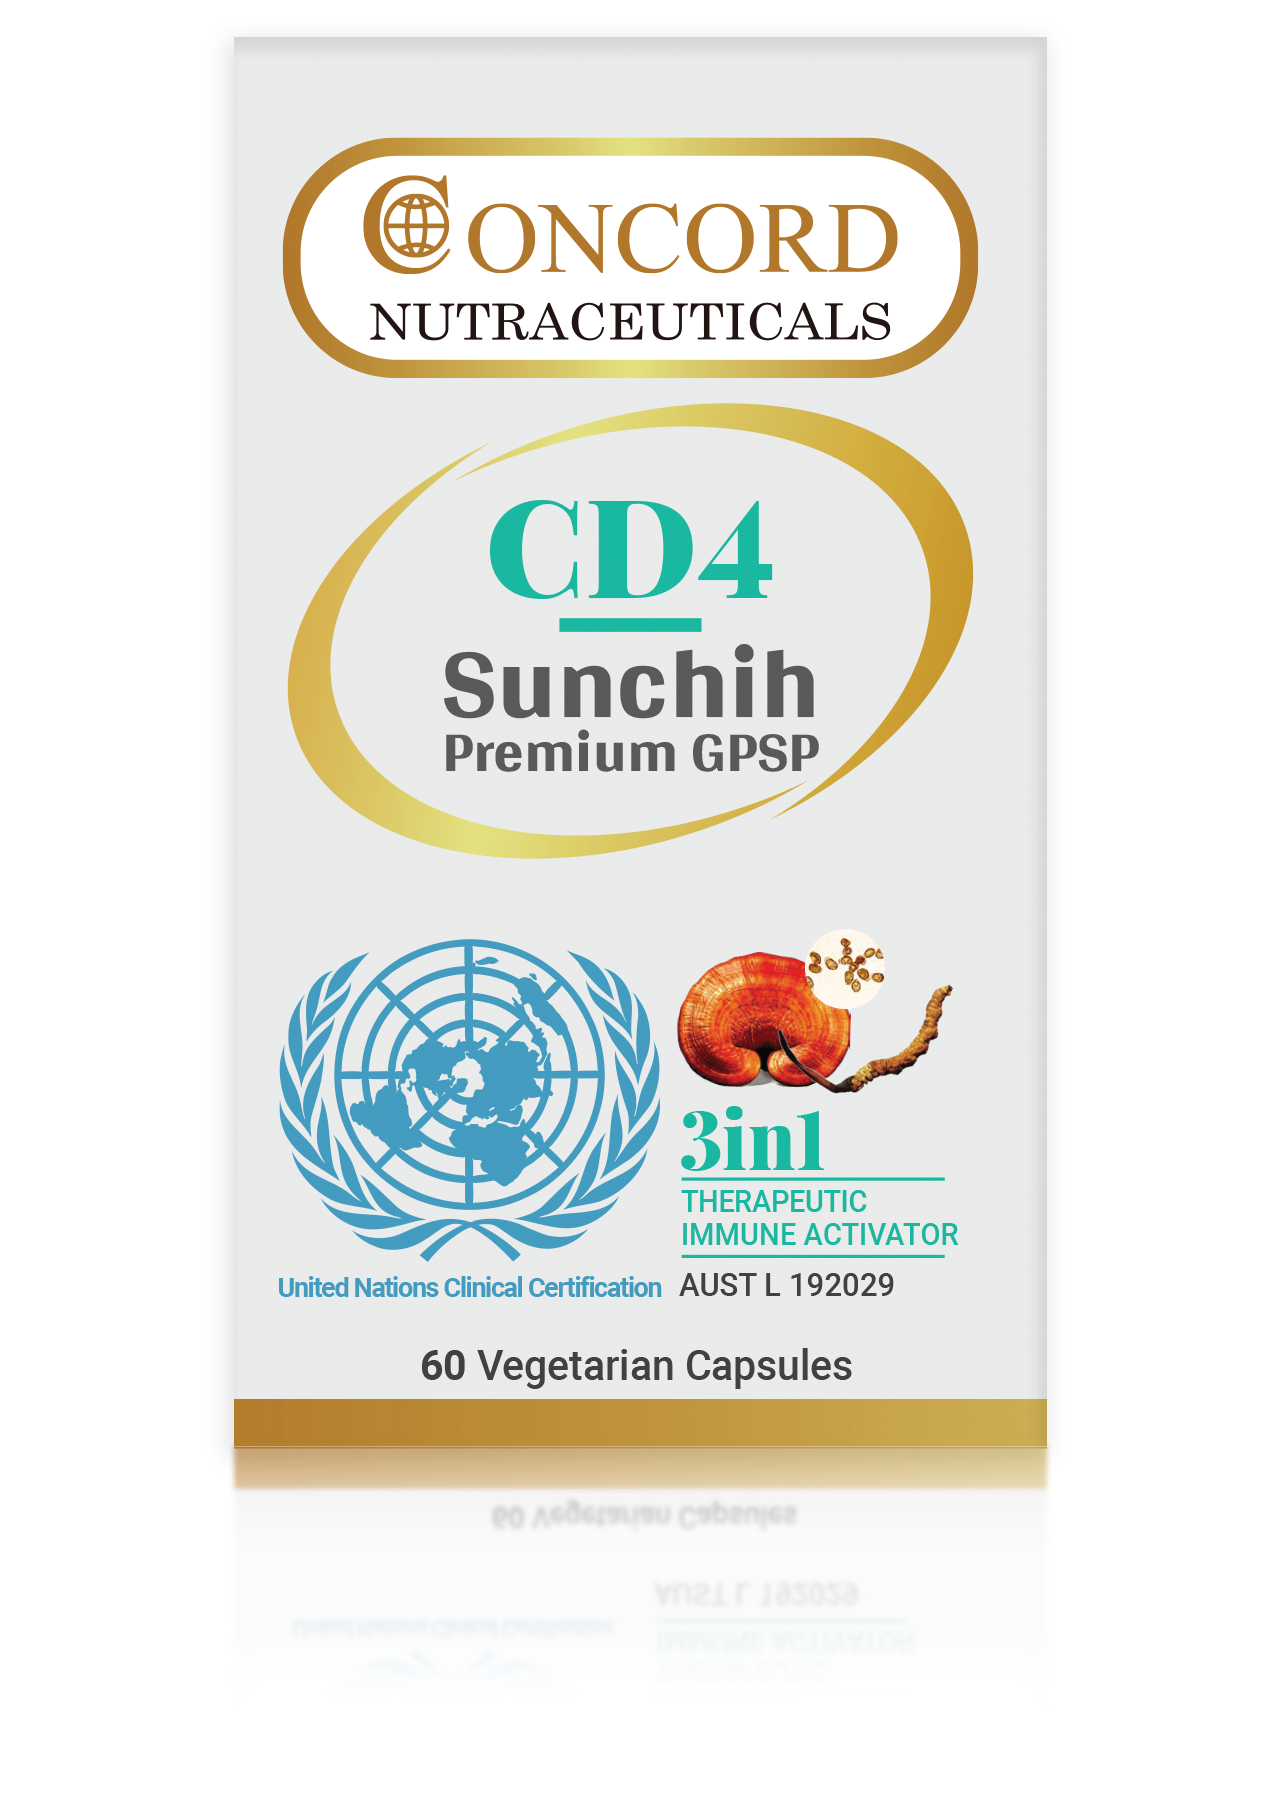 CD4 Sunchih Premium - ConcordNutraceuticals